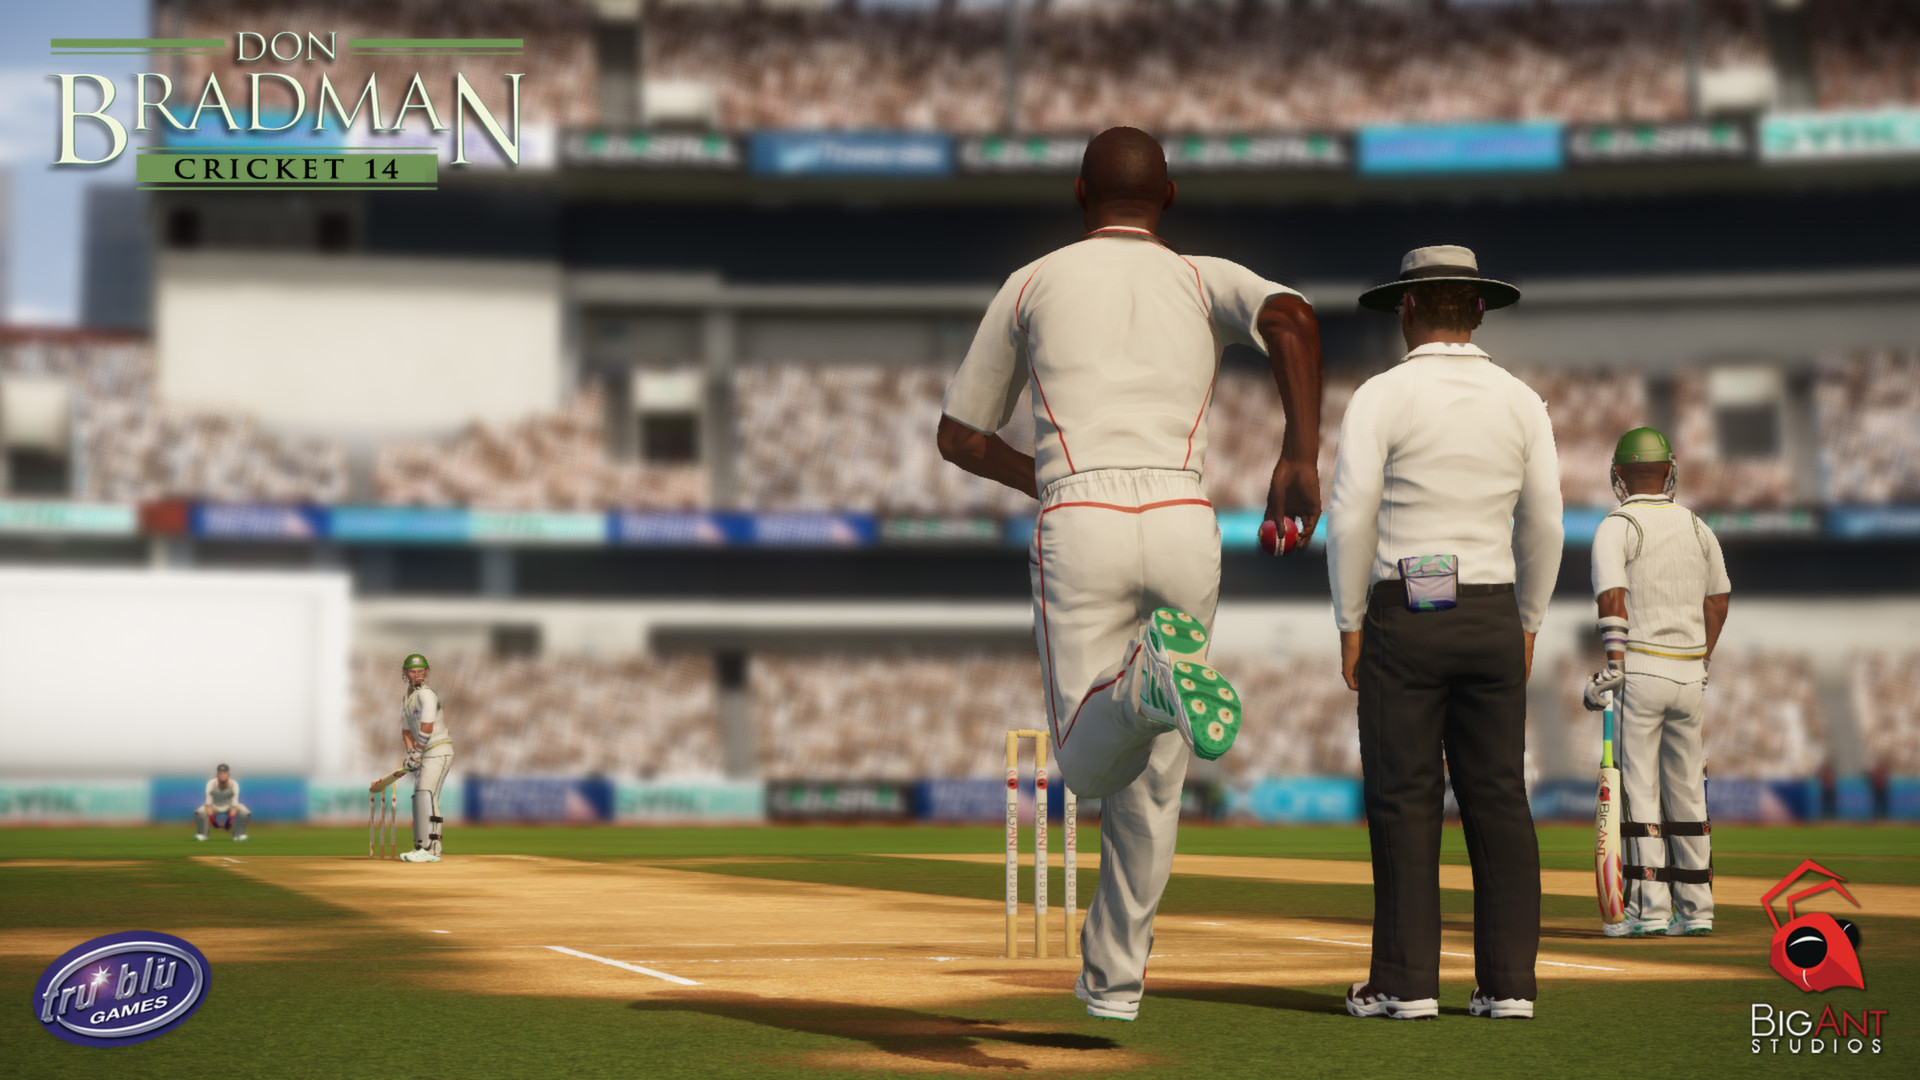 Don Bradman Cricket 14 on Steam